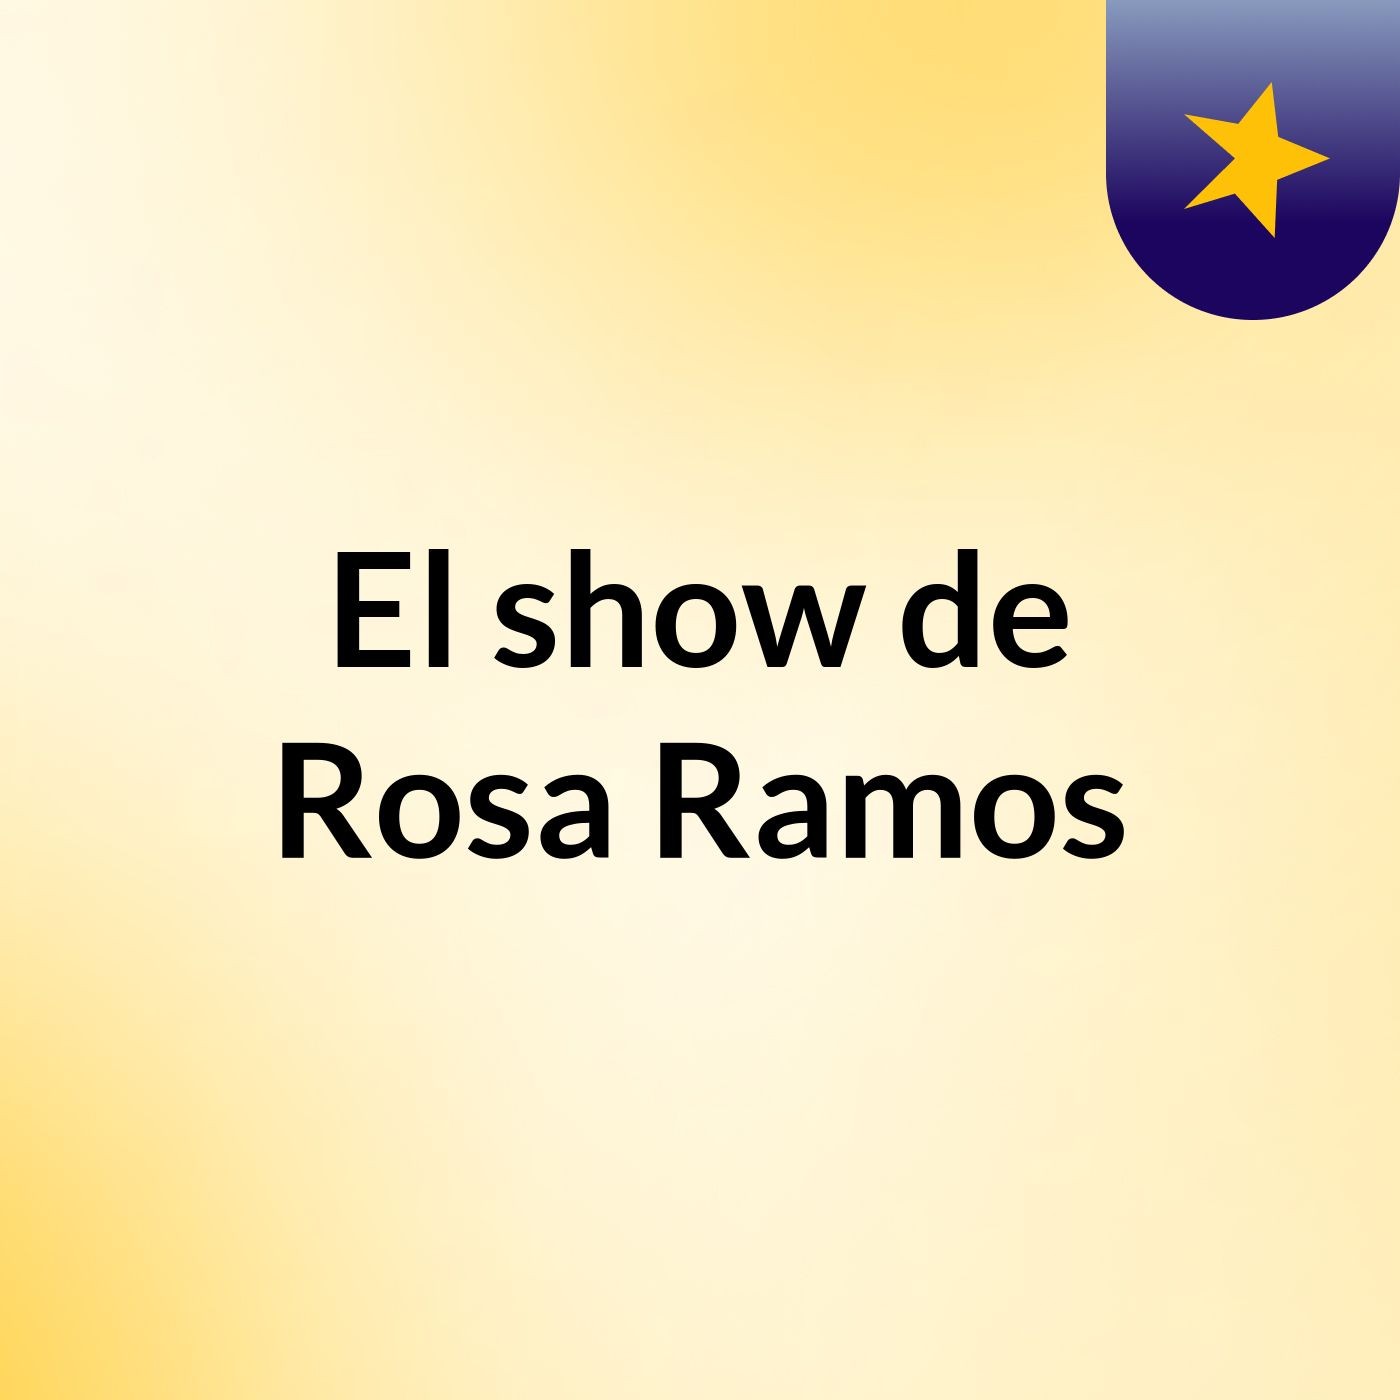 El show de Rosa Ramos